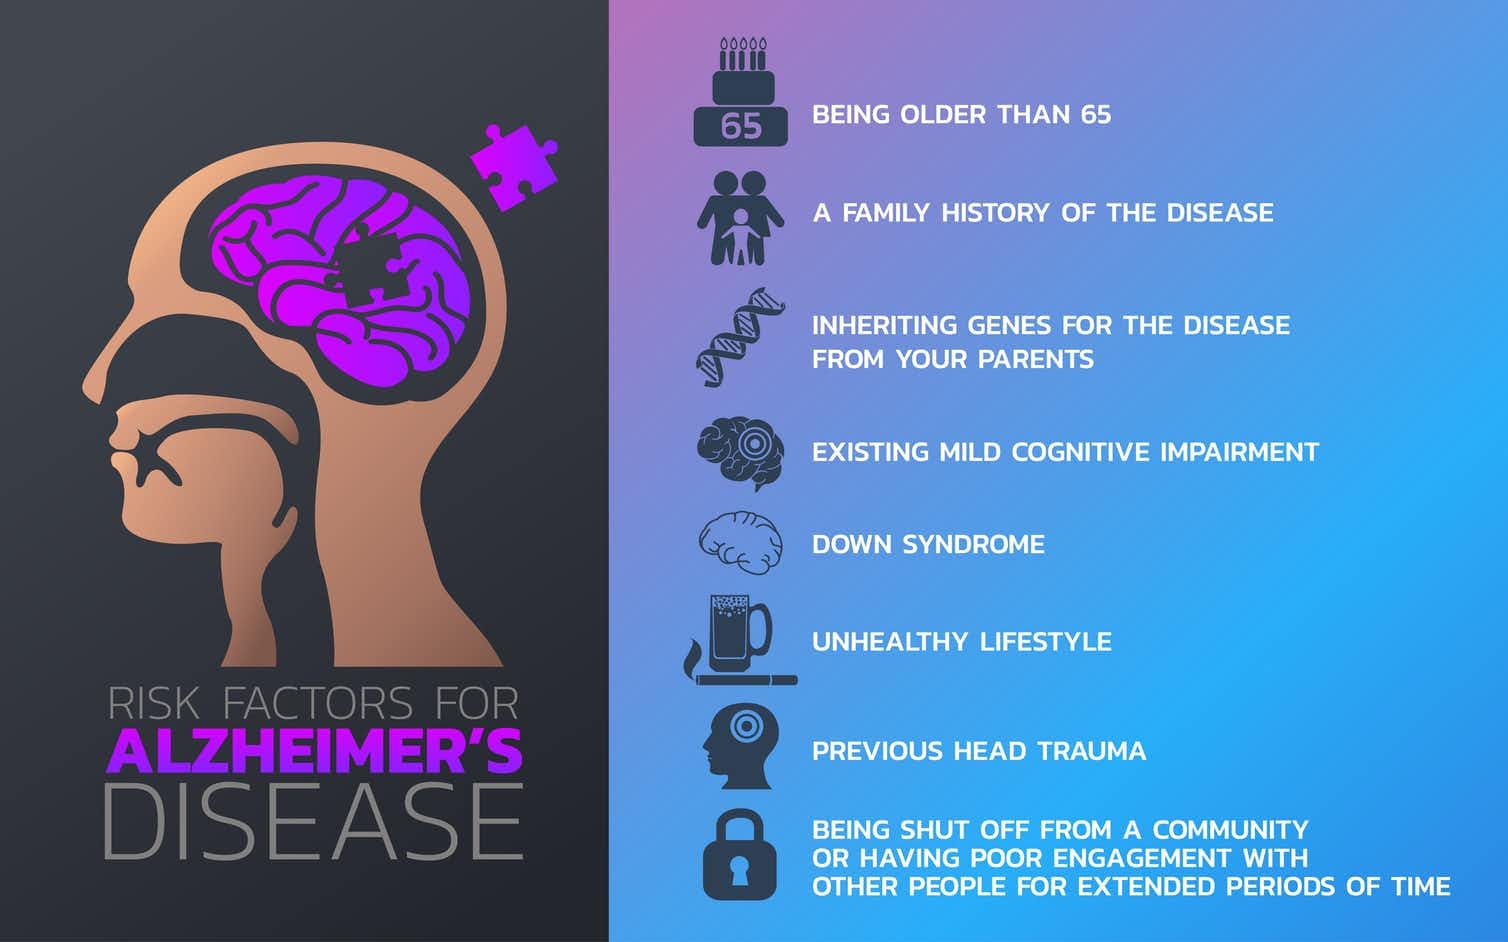 World Alzheimers Day 21 September 2020: History 